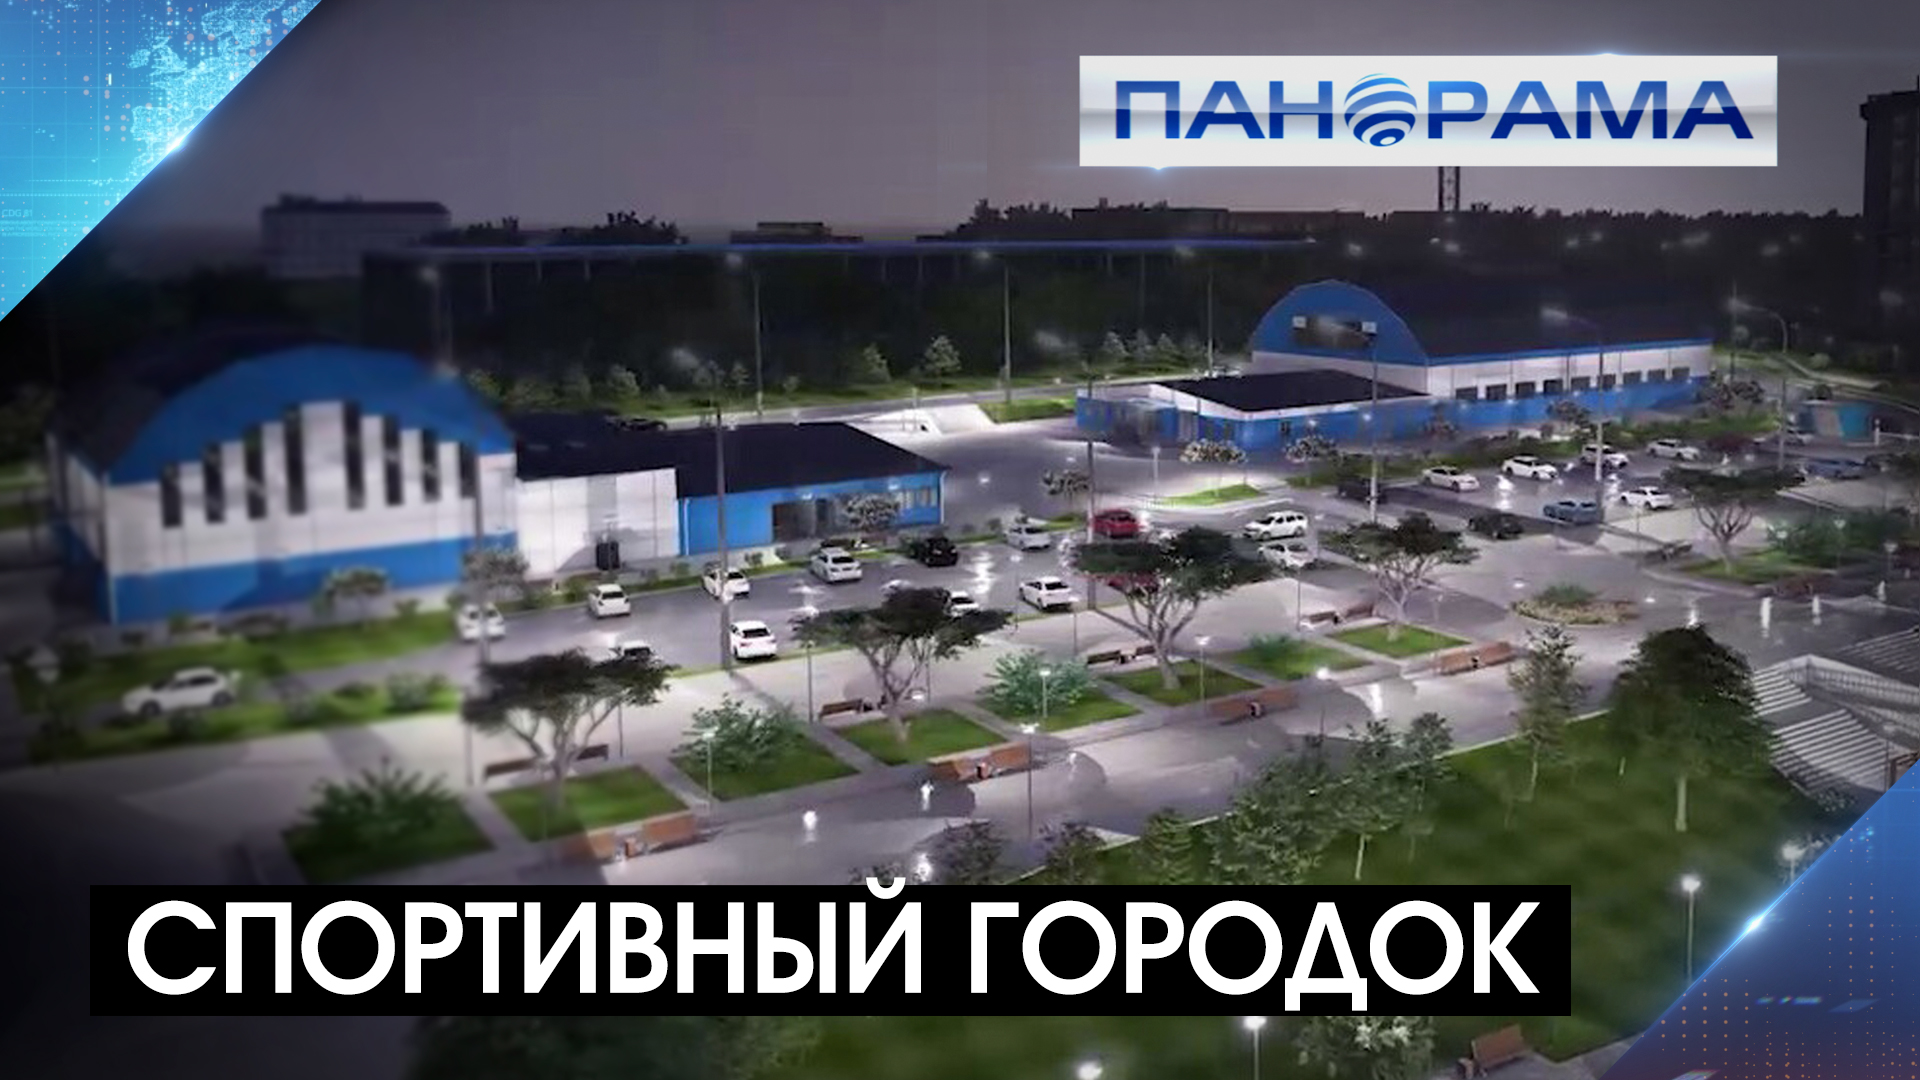 Спорткомплекс "Динамо" появится в Донецке до конца года!